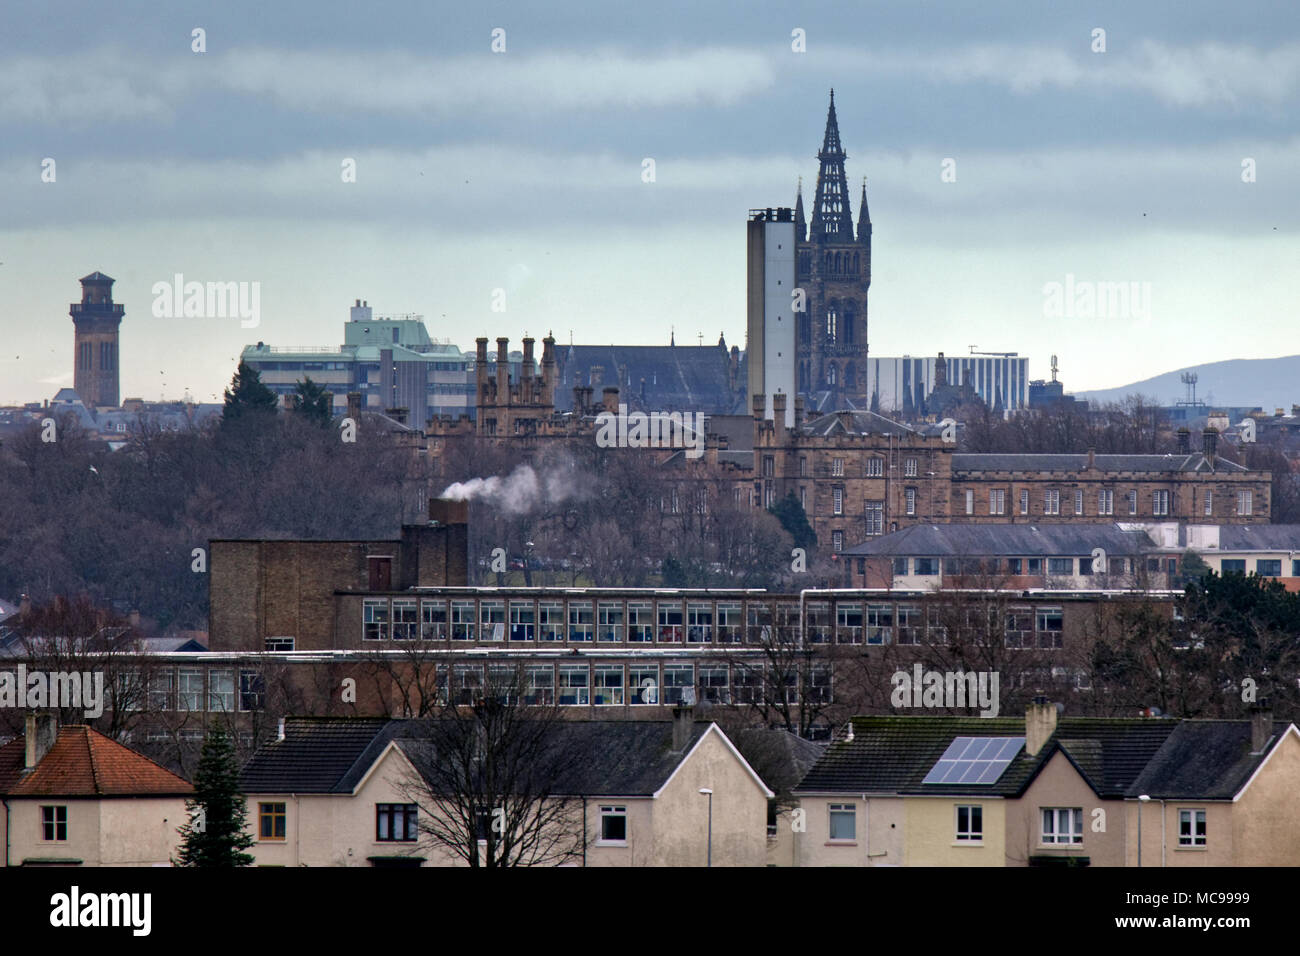 La universidad de Glasgow, la torre del reloj con el hospital y knightswood gartnaval secundaria en una vista comprimida del west End de Glasgow. Foto de stock